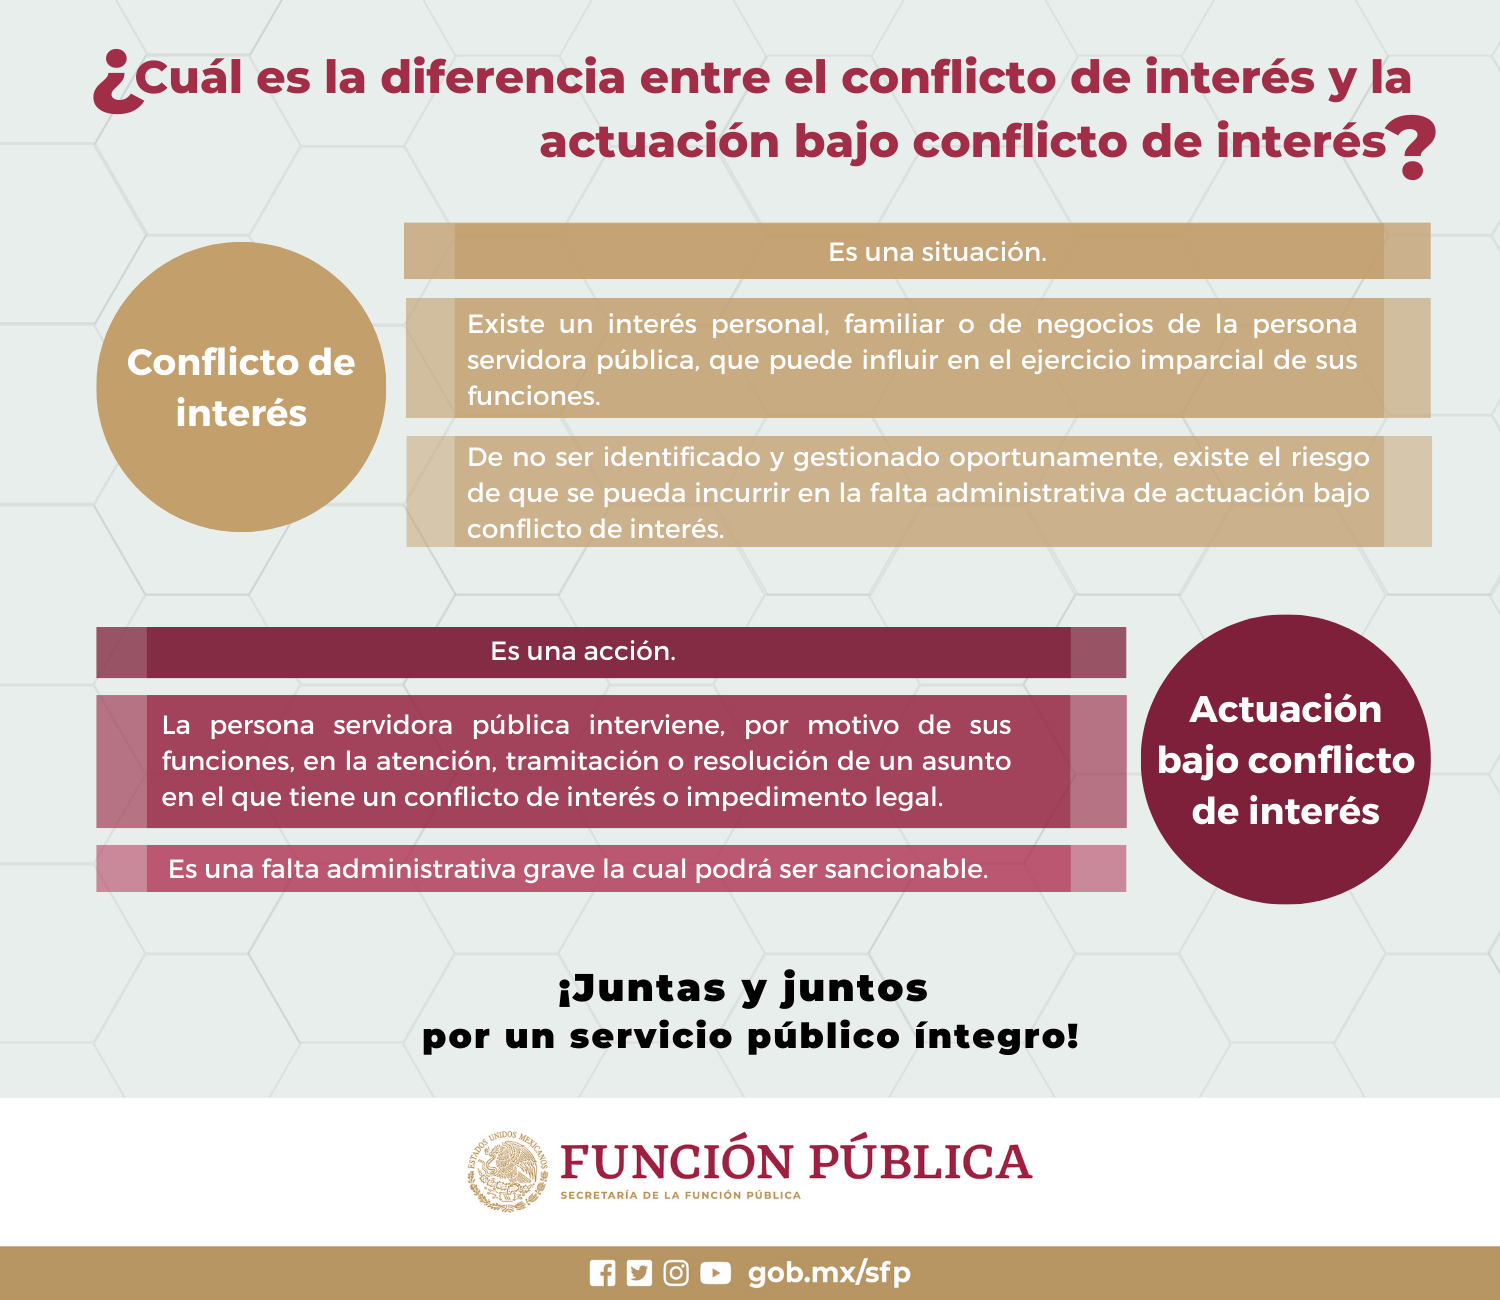 ¿Cuál es la diferencia entre el conflicto de interés y la actuación bajo conflicto de interés?